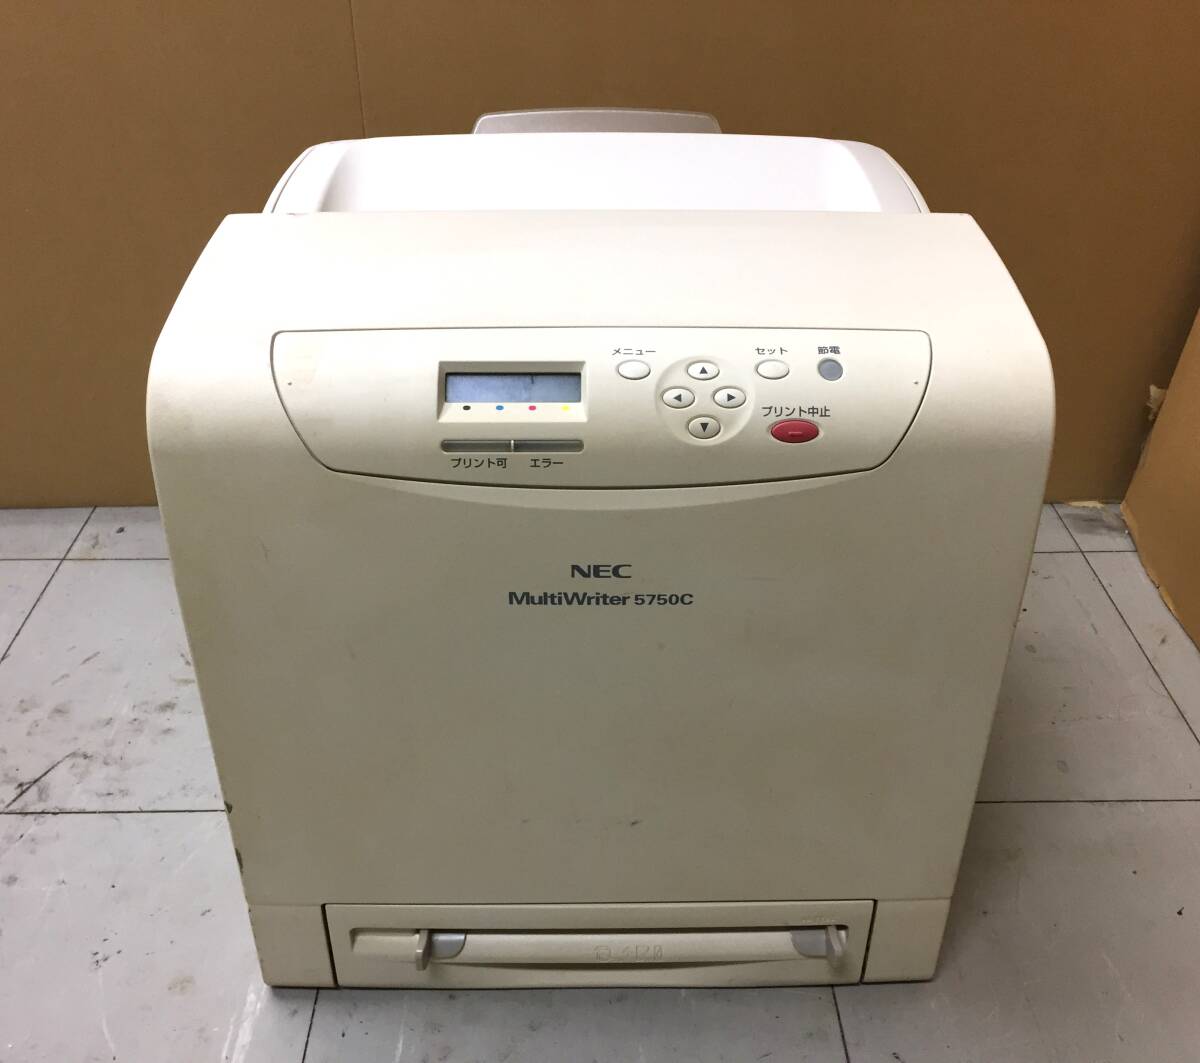 NEC цветной лазерный принтер -5750C